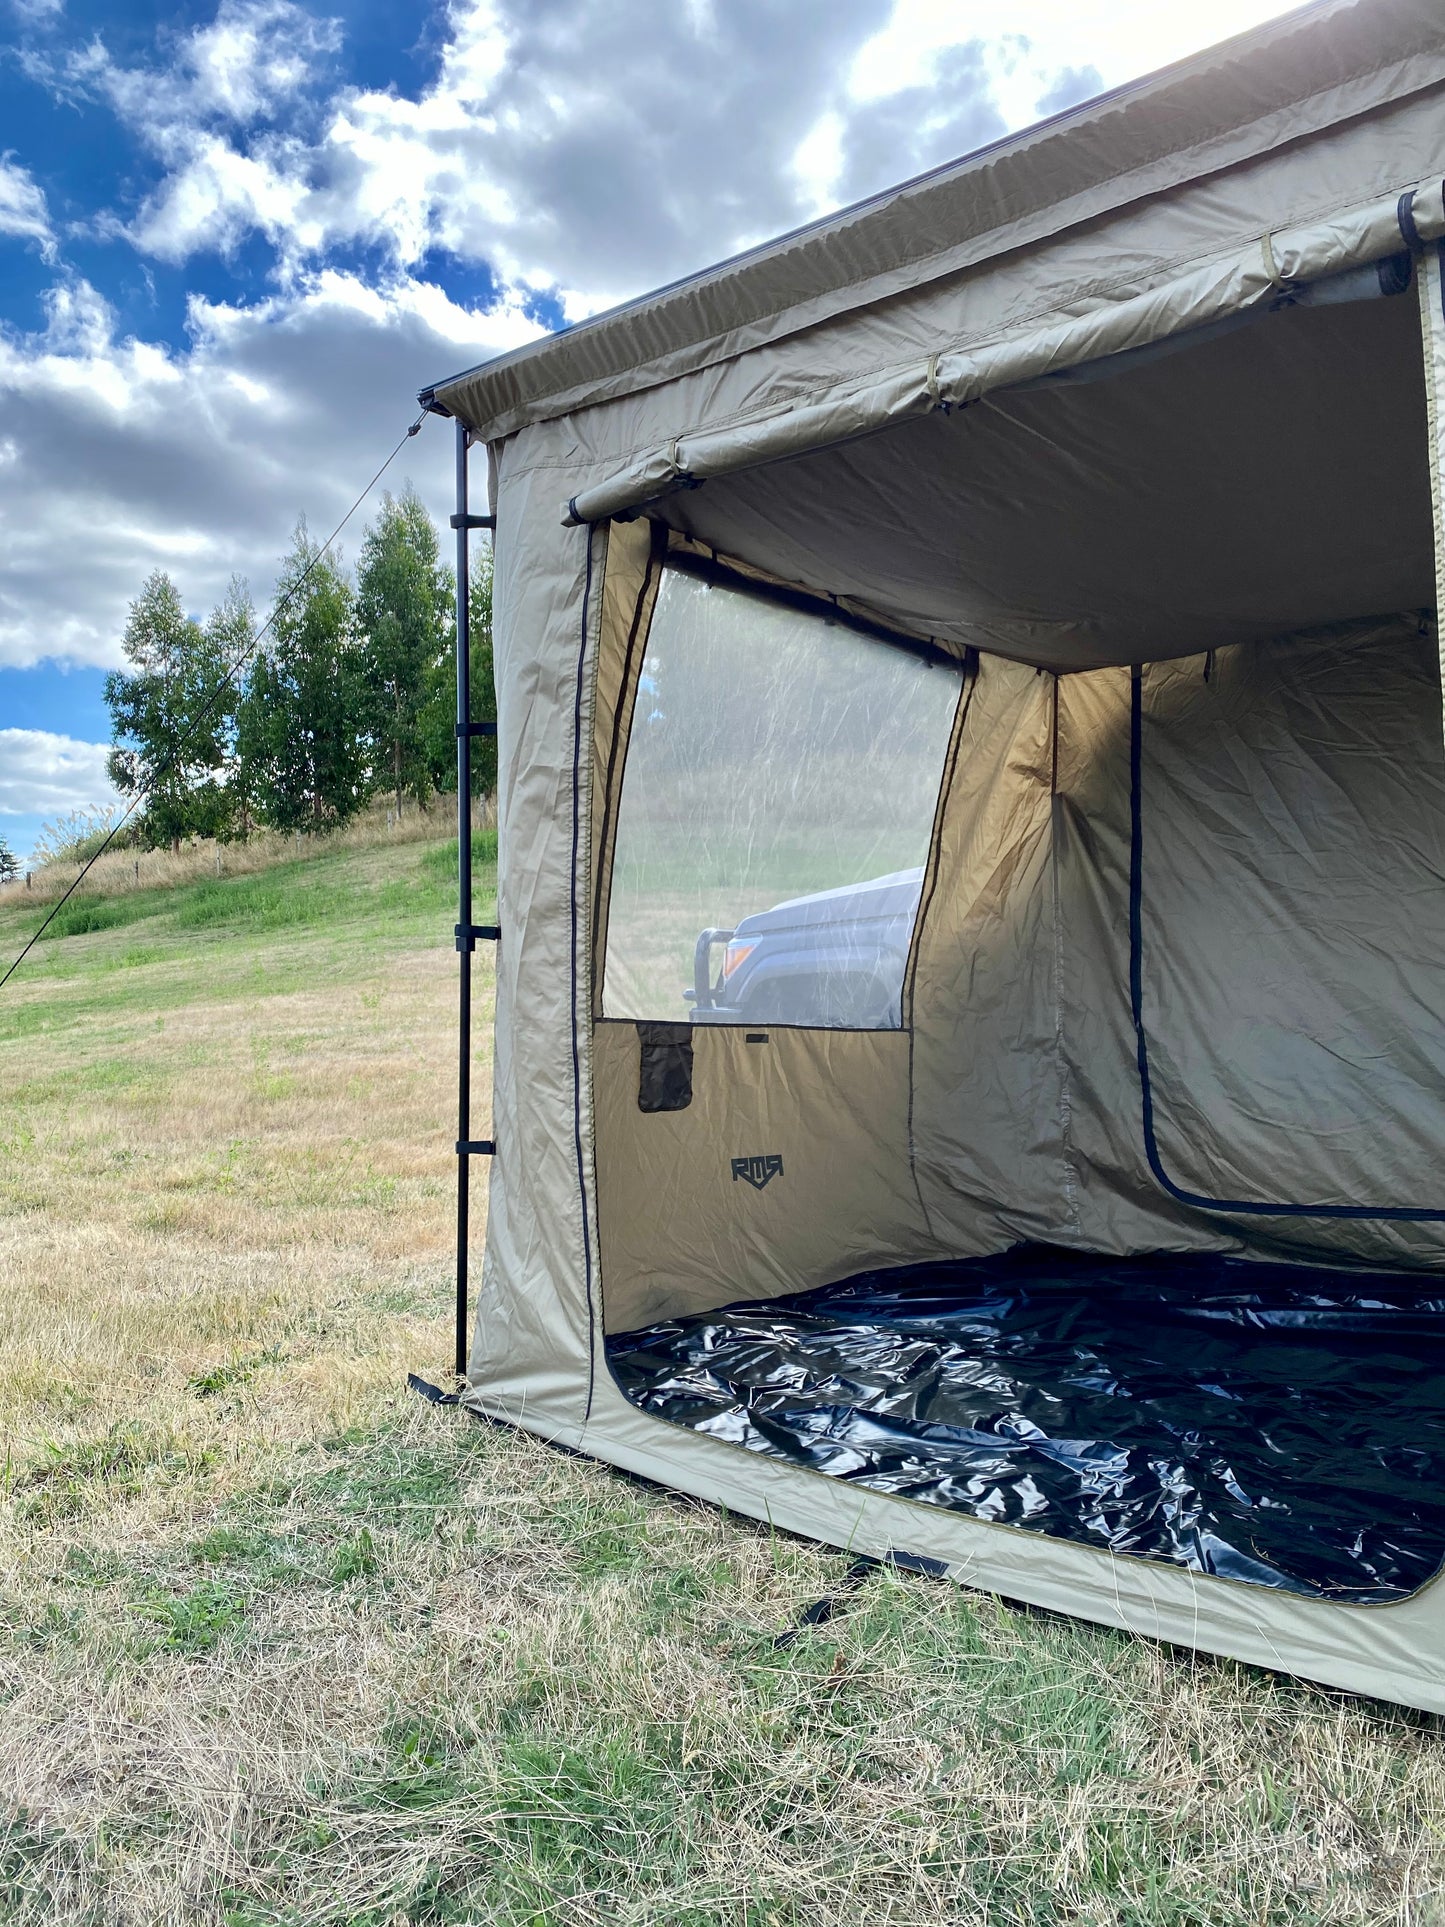 RMR Awning Tent - 2.5m x 2.5m